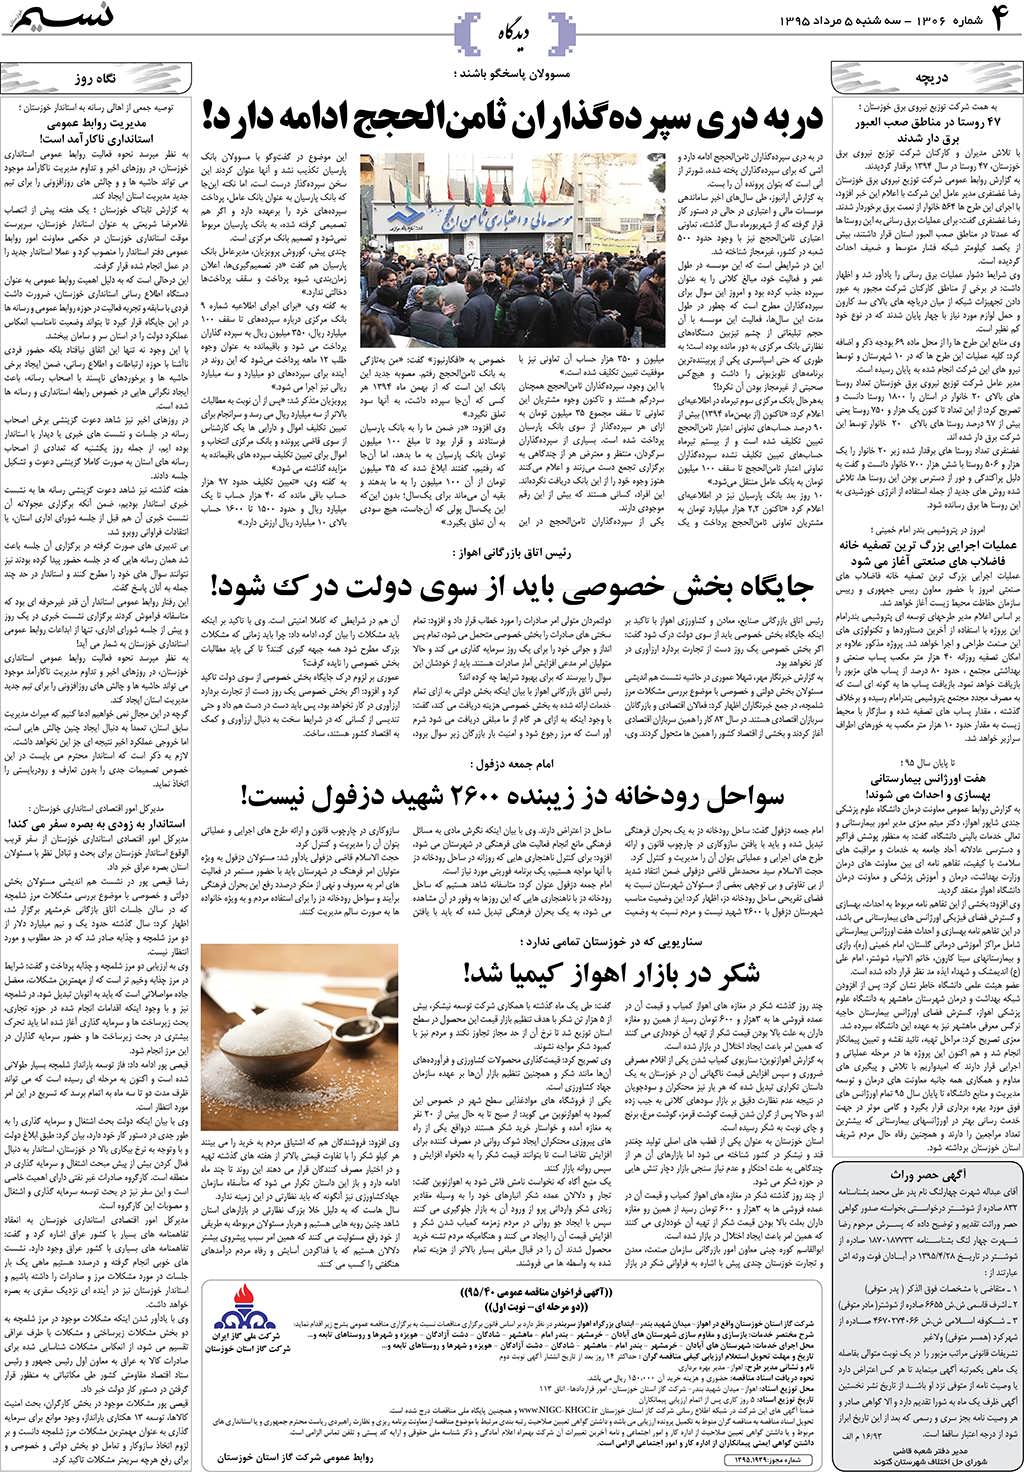 صفحه دیدگاه روزنامه نسیم شماره 1306